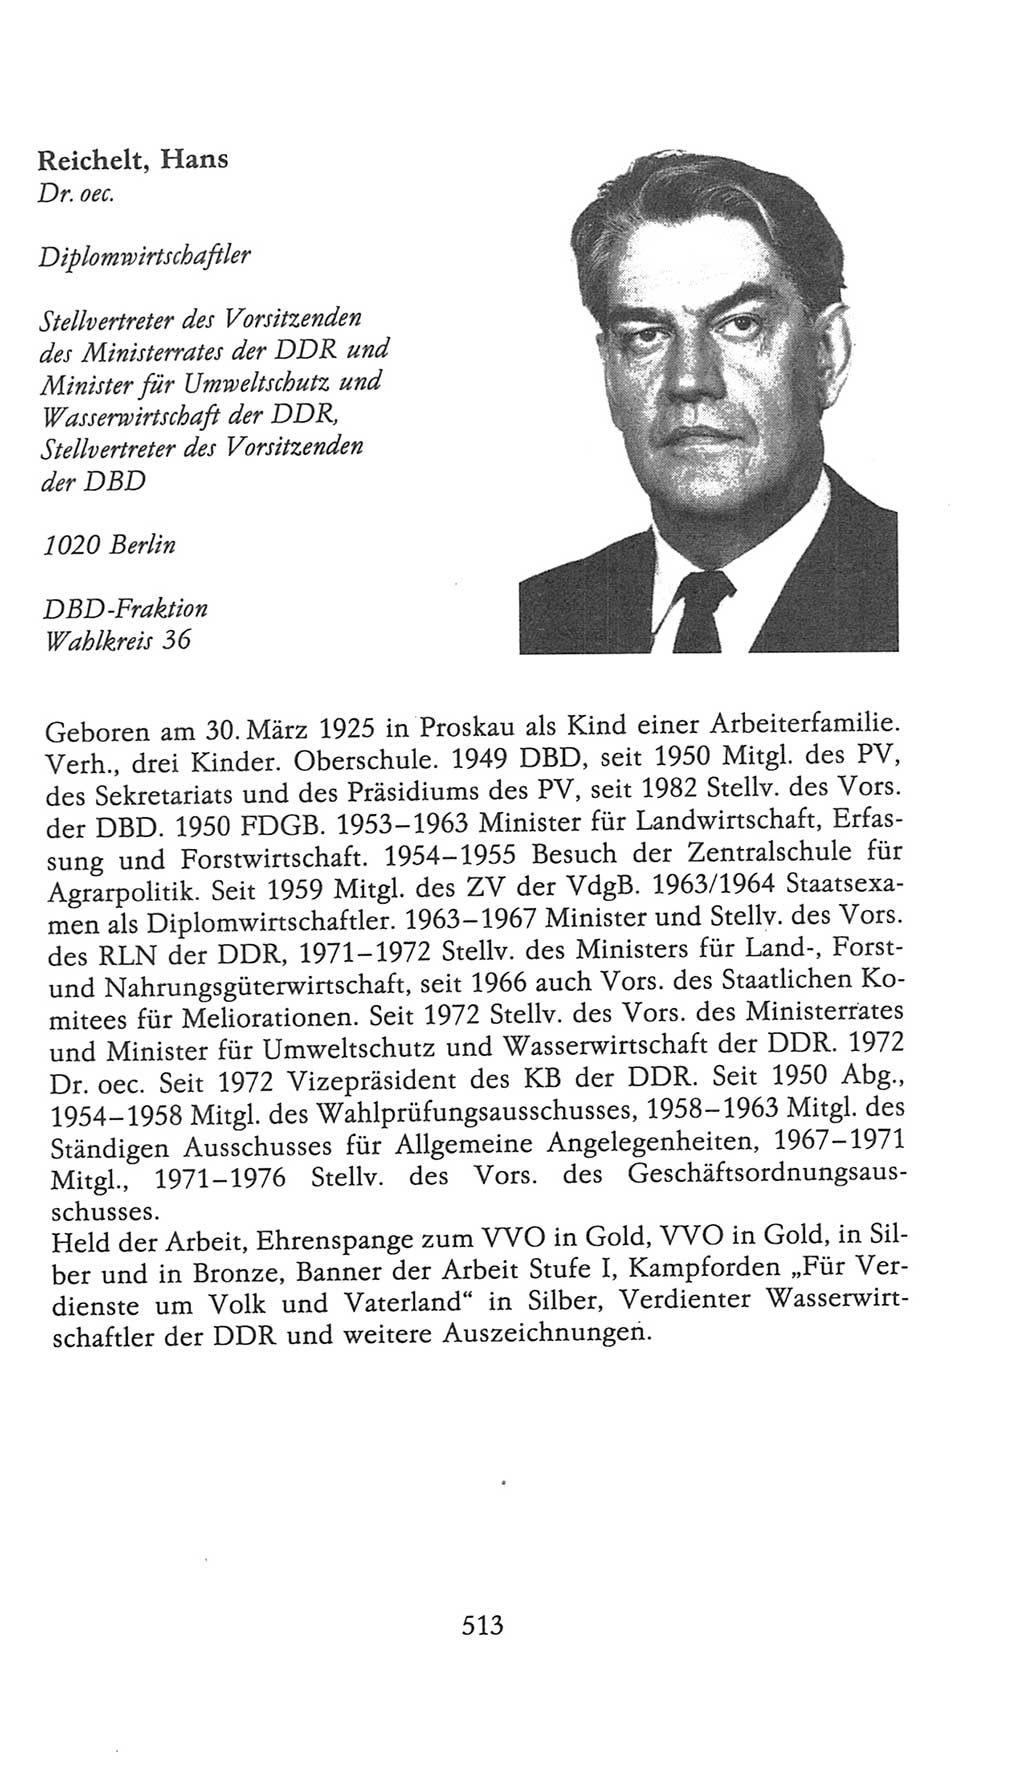 Volkskammer (VK) der Deutschen Demokratischen Republik (DDR), 9. Wahlperiode 1986-1990, Seite 513 (VK. DDR 9. WP. 1986-1990, S. 513)